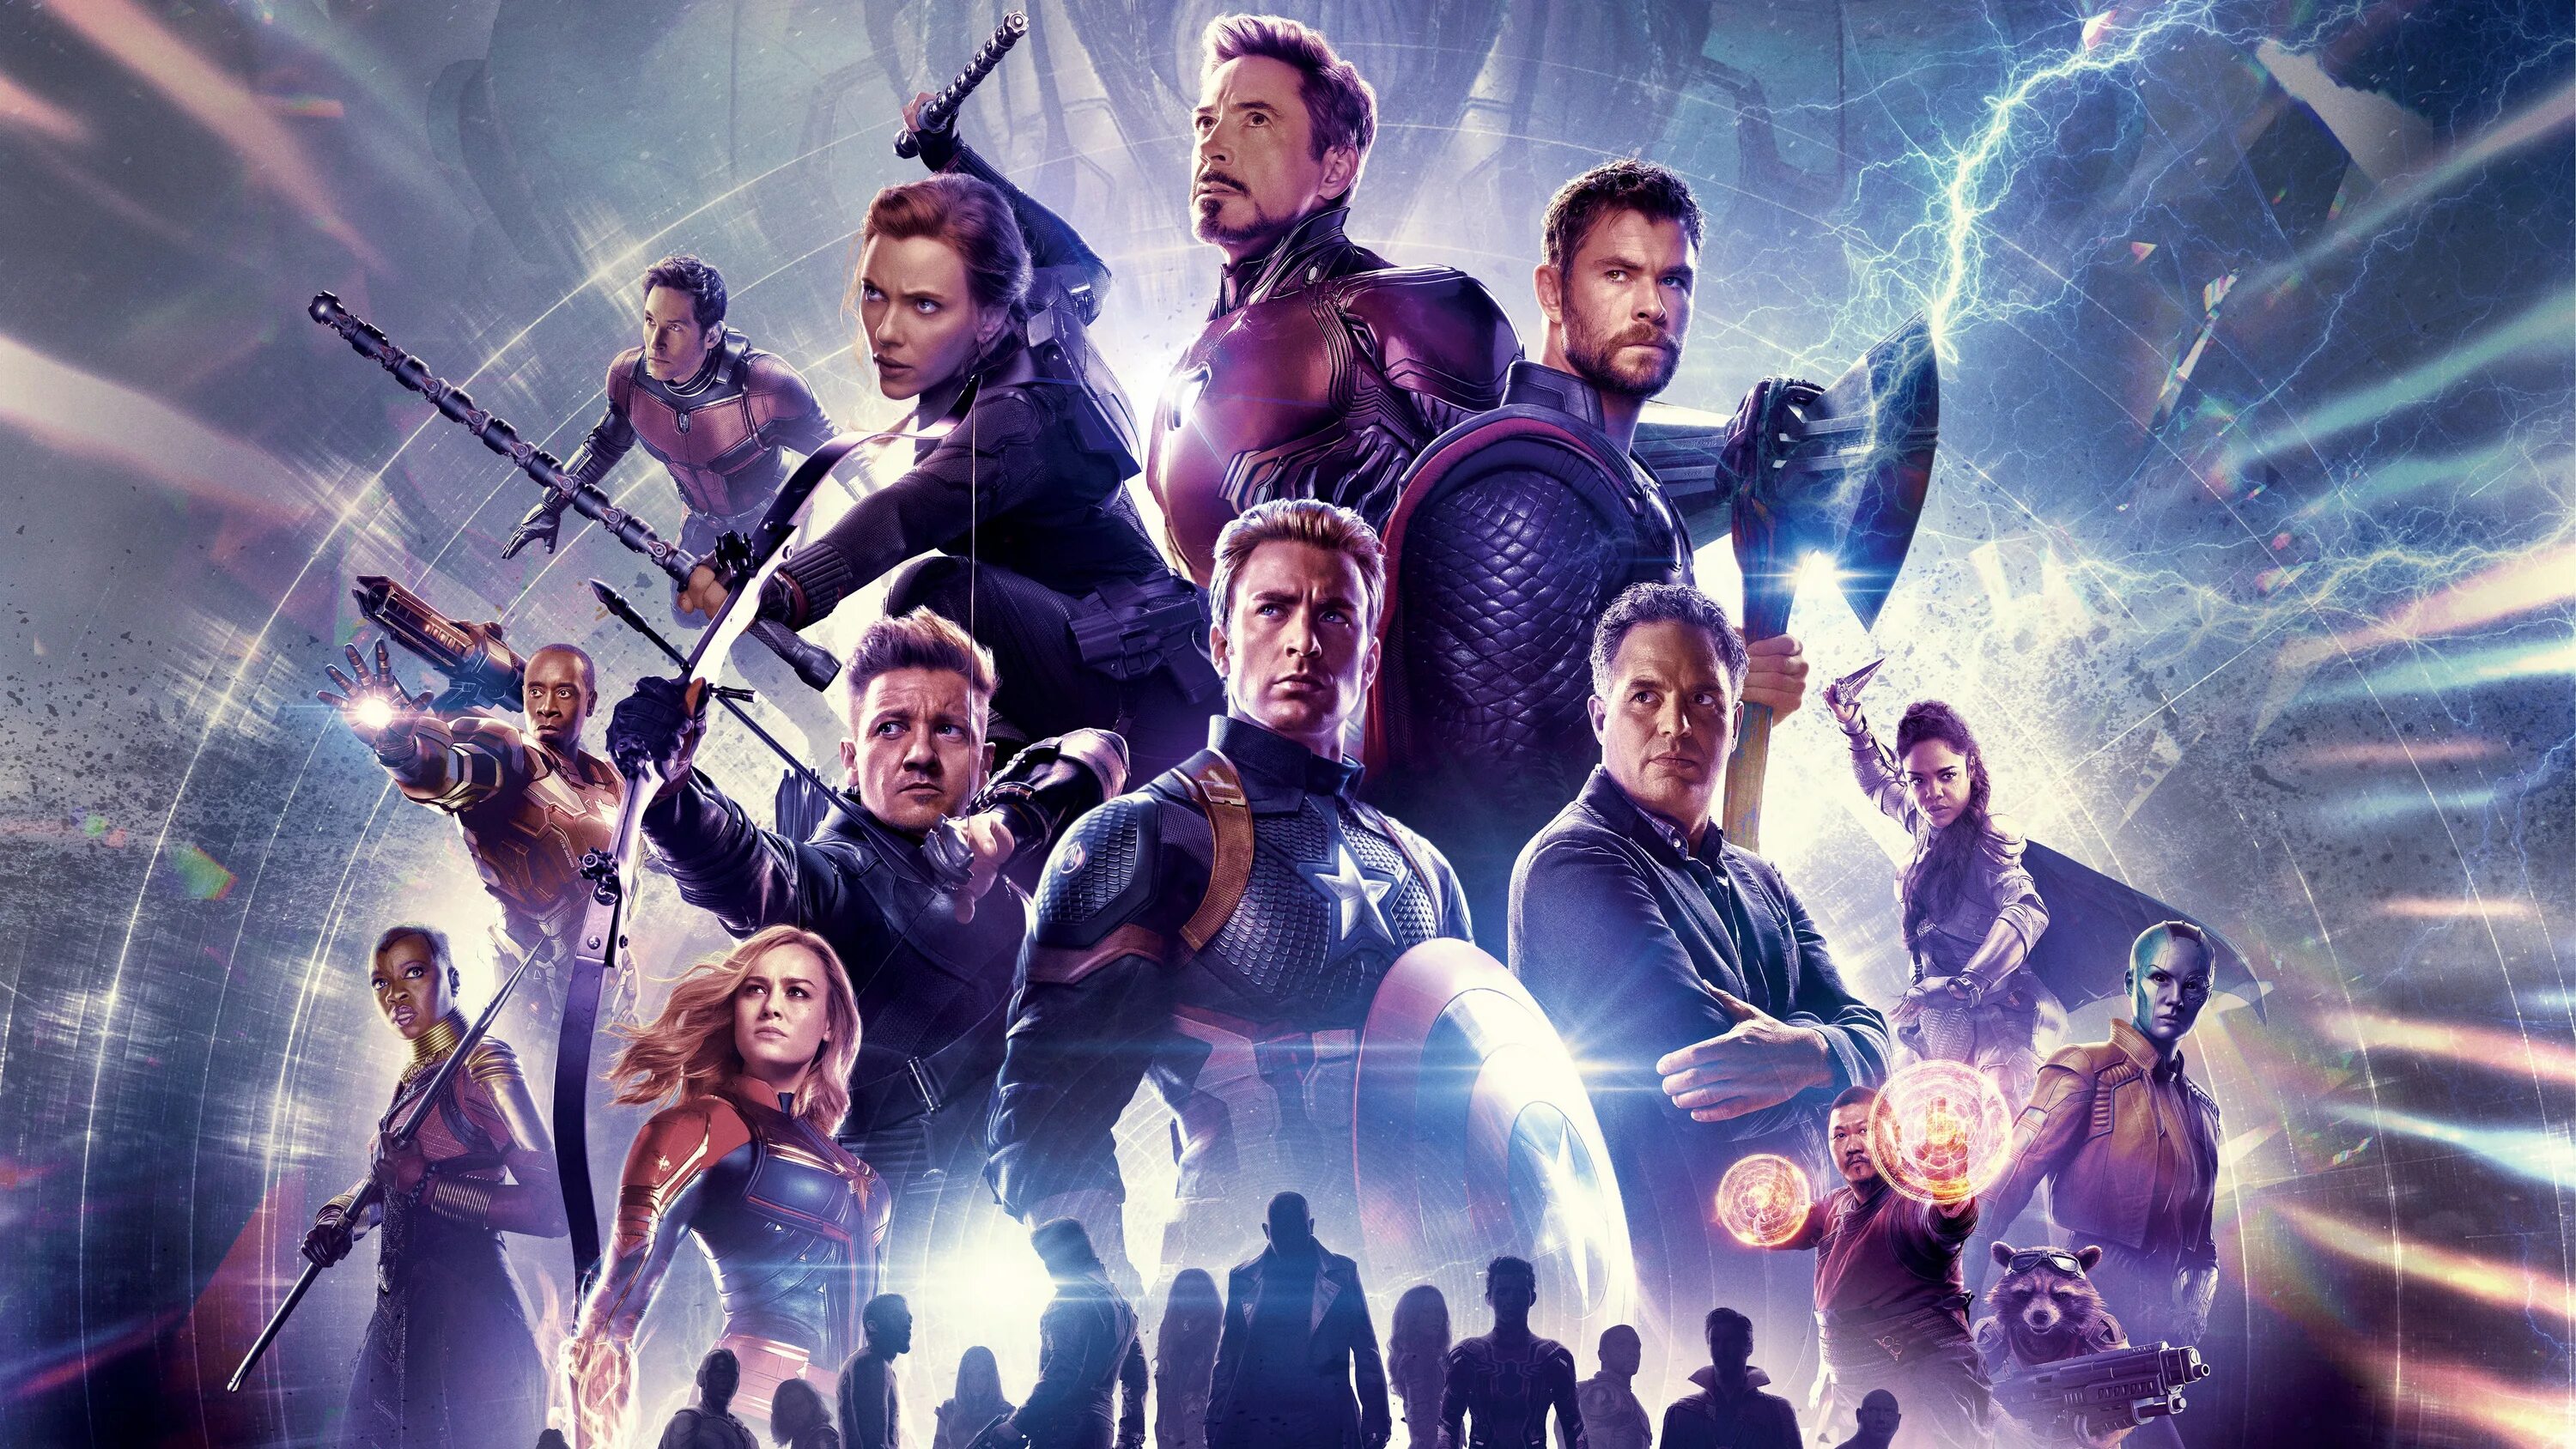 Постеры 2019. Мстители: финал Avengers: Endgame. Постер "Avengers. Endgame". Постер "Мстители финал".